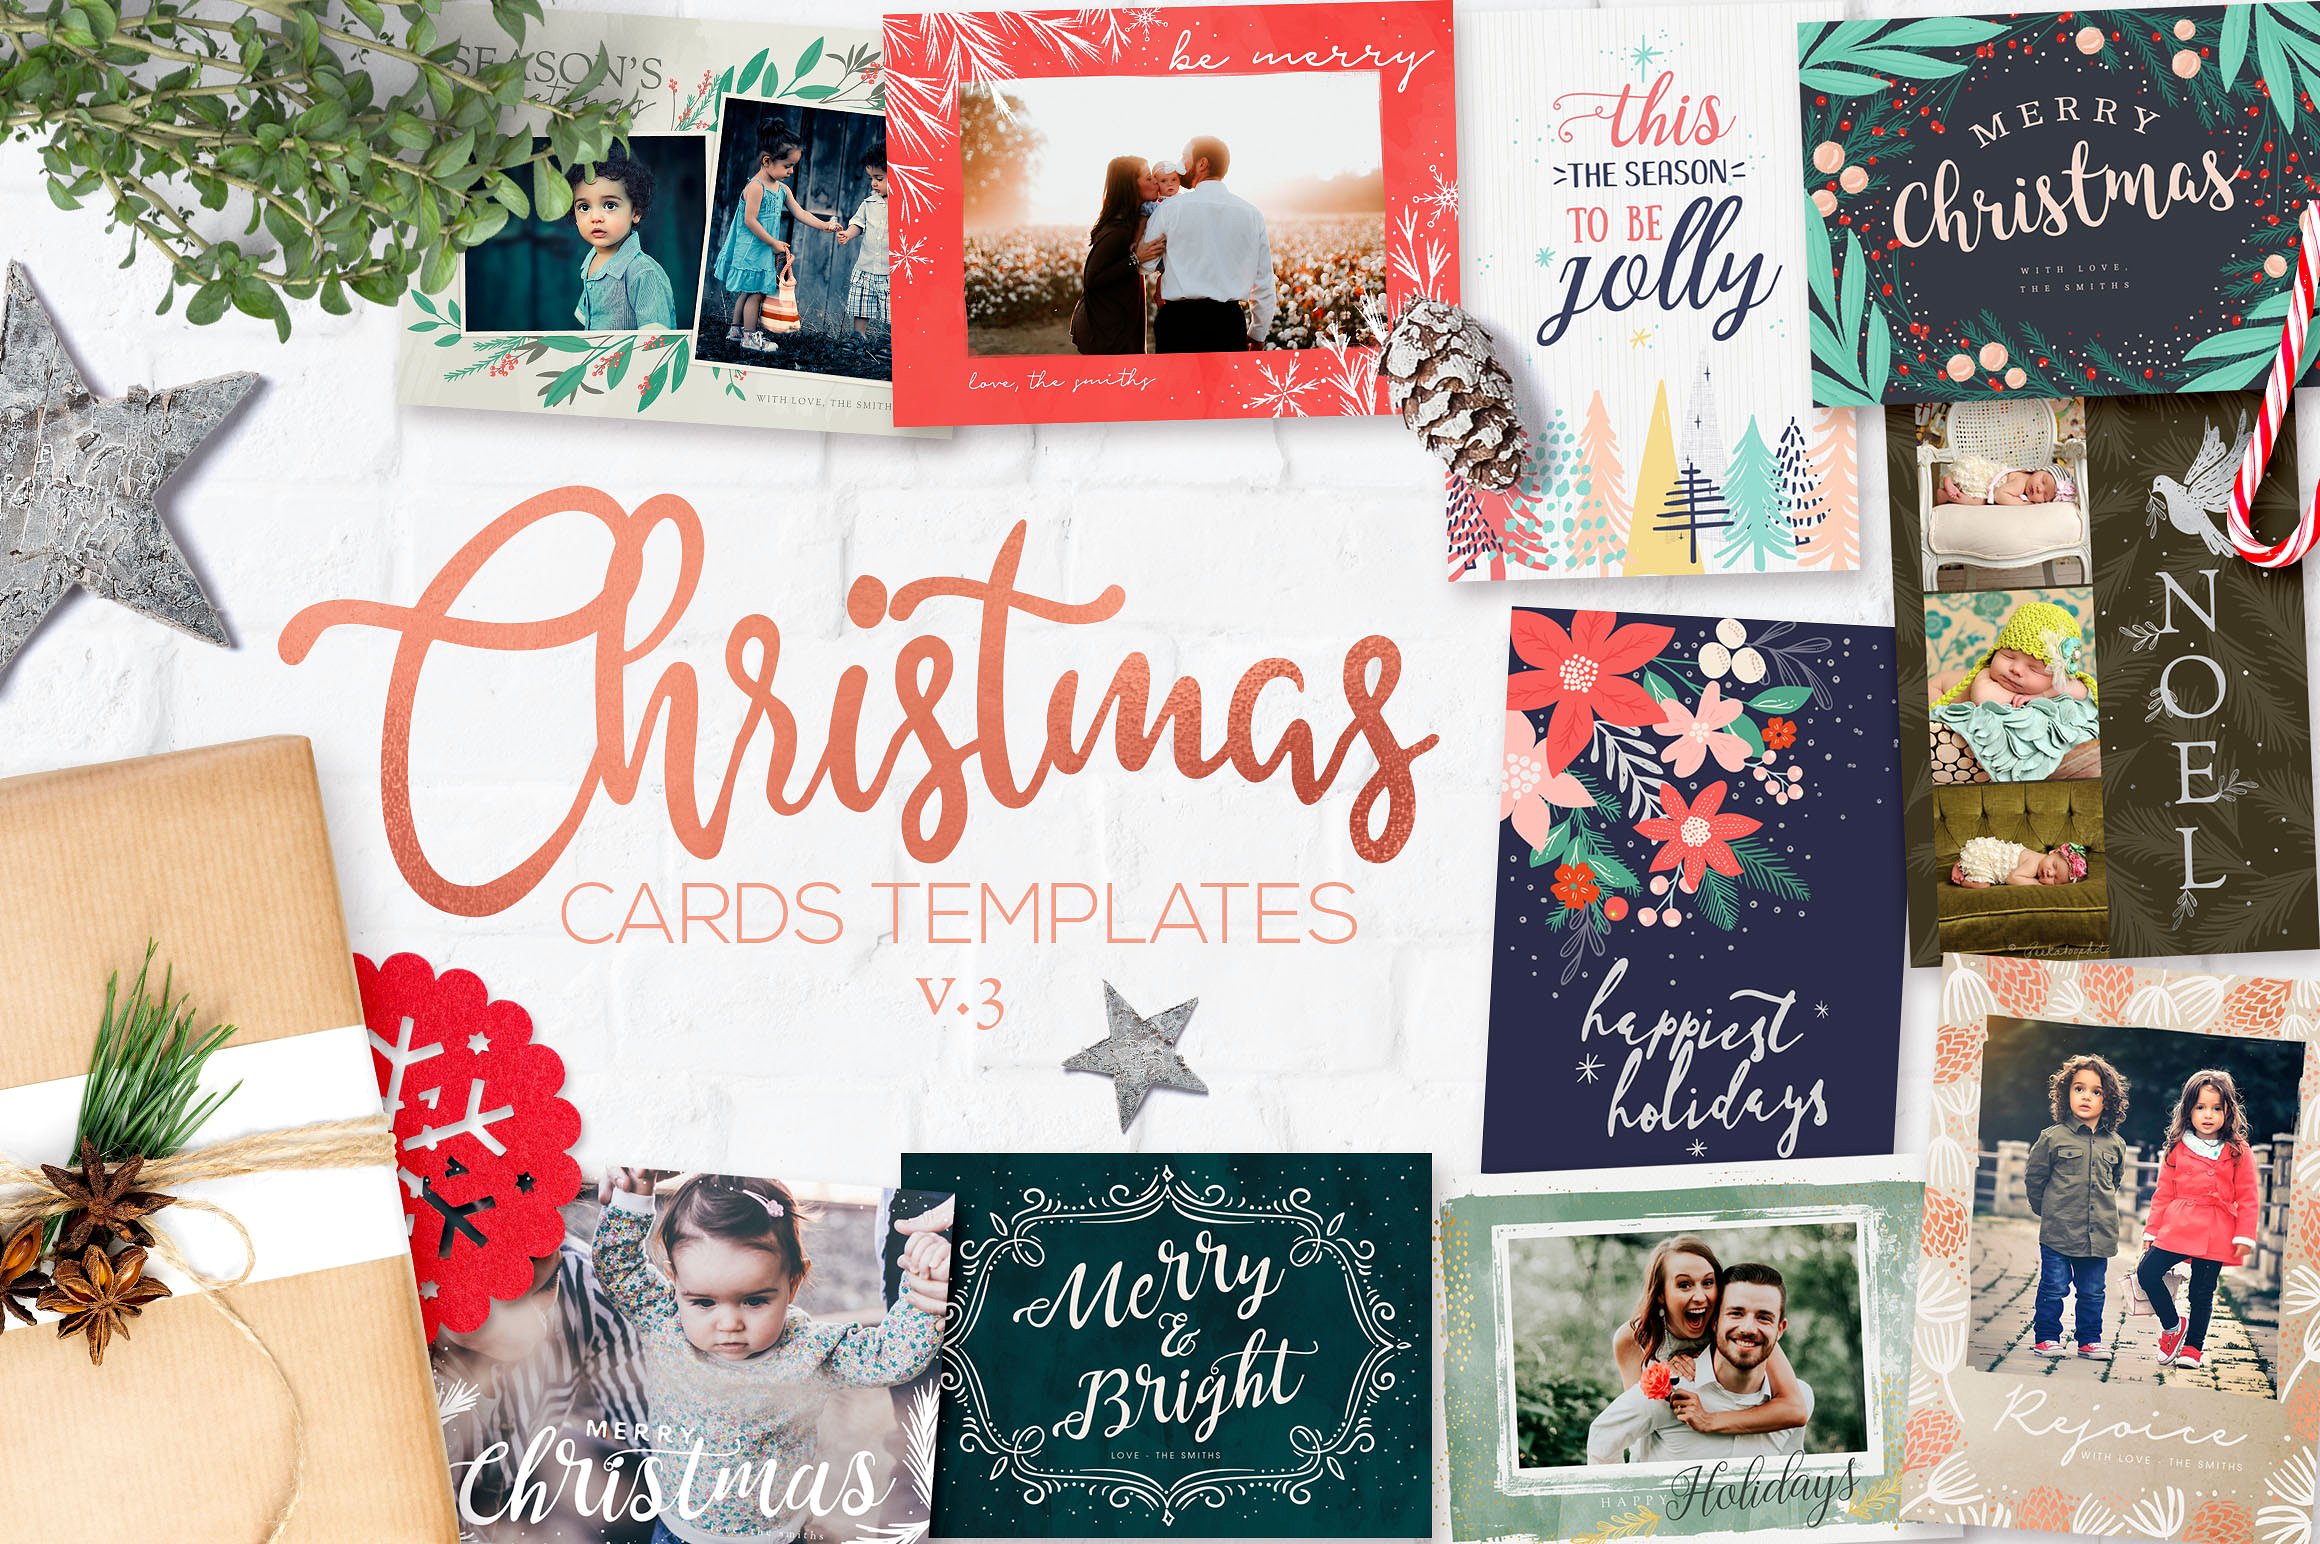 圣诞节主题贺卡模板v3 Christmas Card Templates v3插图